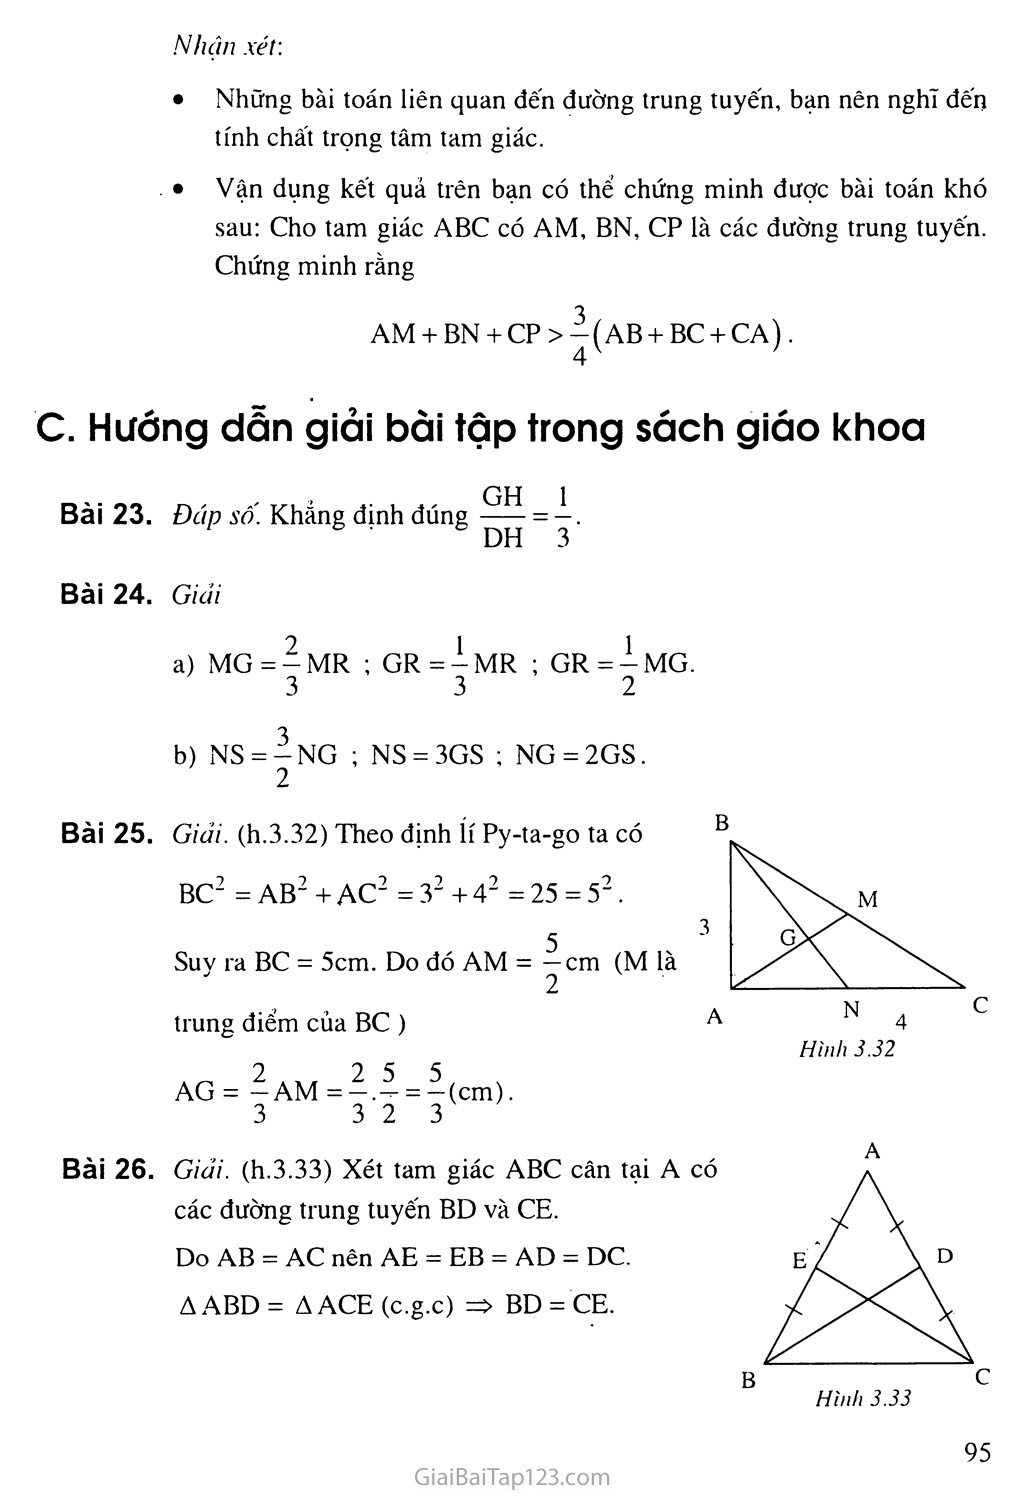 Bài 4. Tình chất ba đường trung tuyến của tam giác trang 2